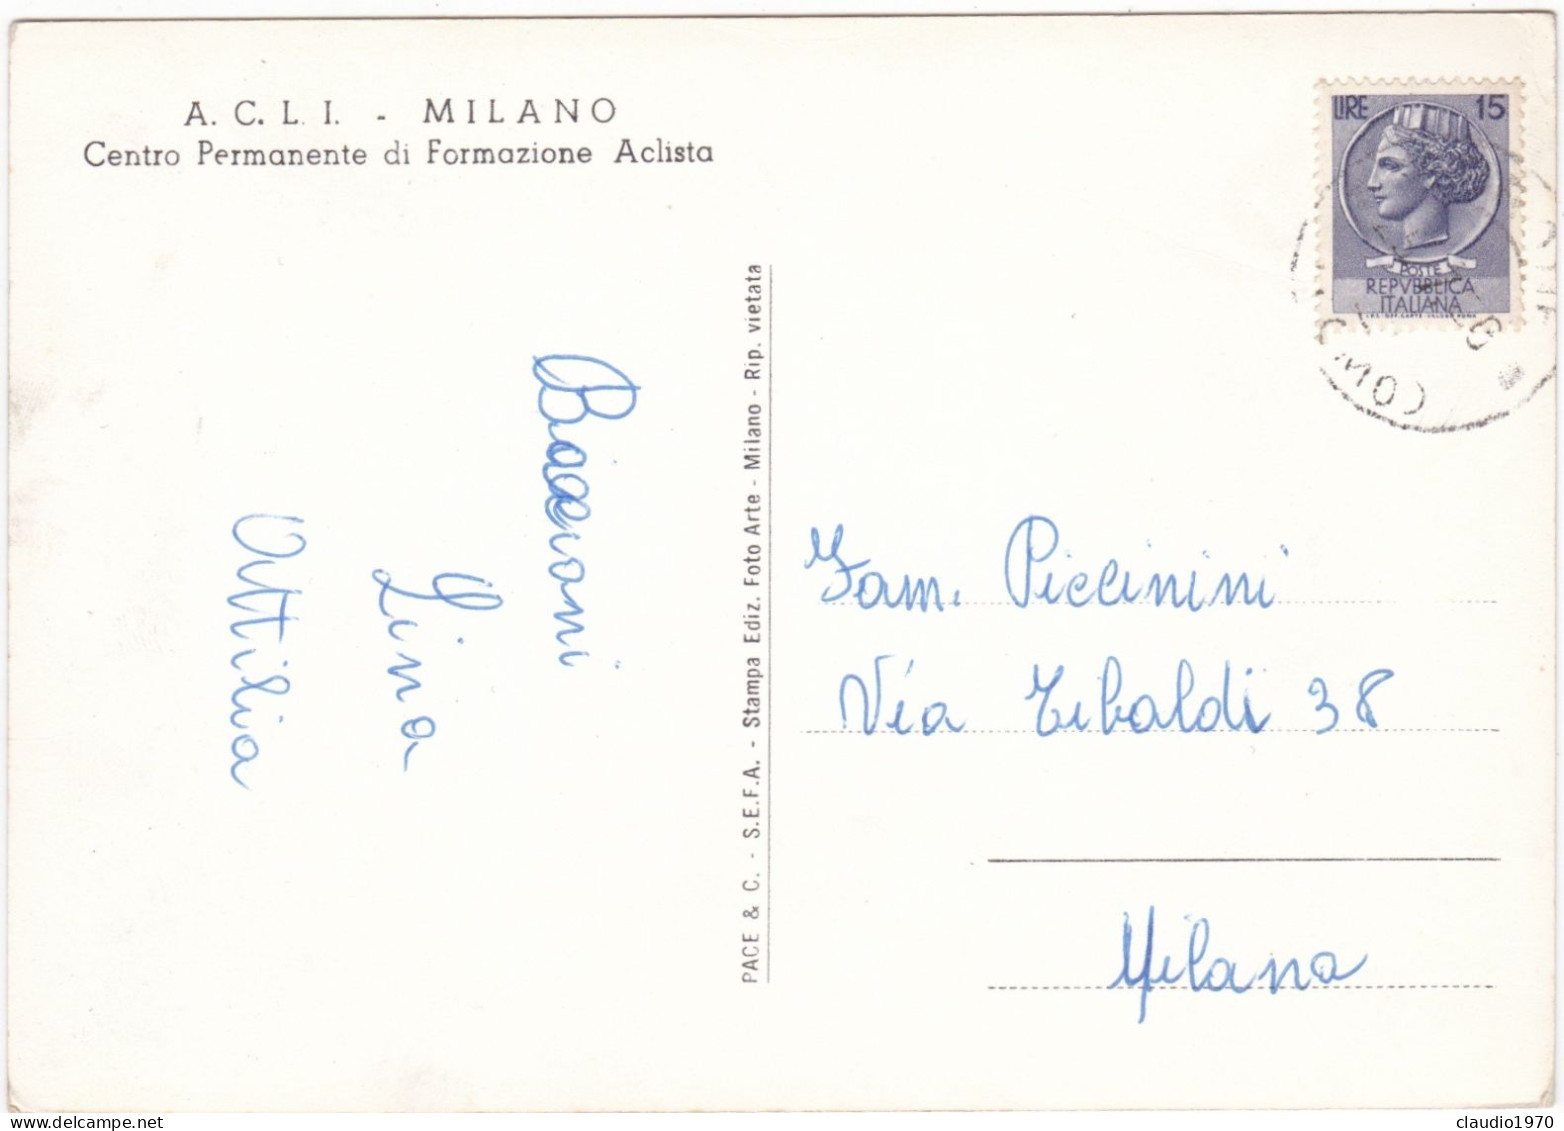 MILANO - CARTOLINA - A.C.L.I. MILANO - CENTRO PERMANENTE DI FOMAZIONE ACLISTA - VIAGGIATA PER MILANO - Milano (Mailand)